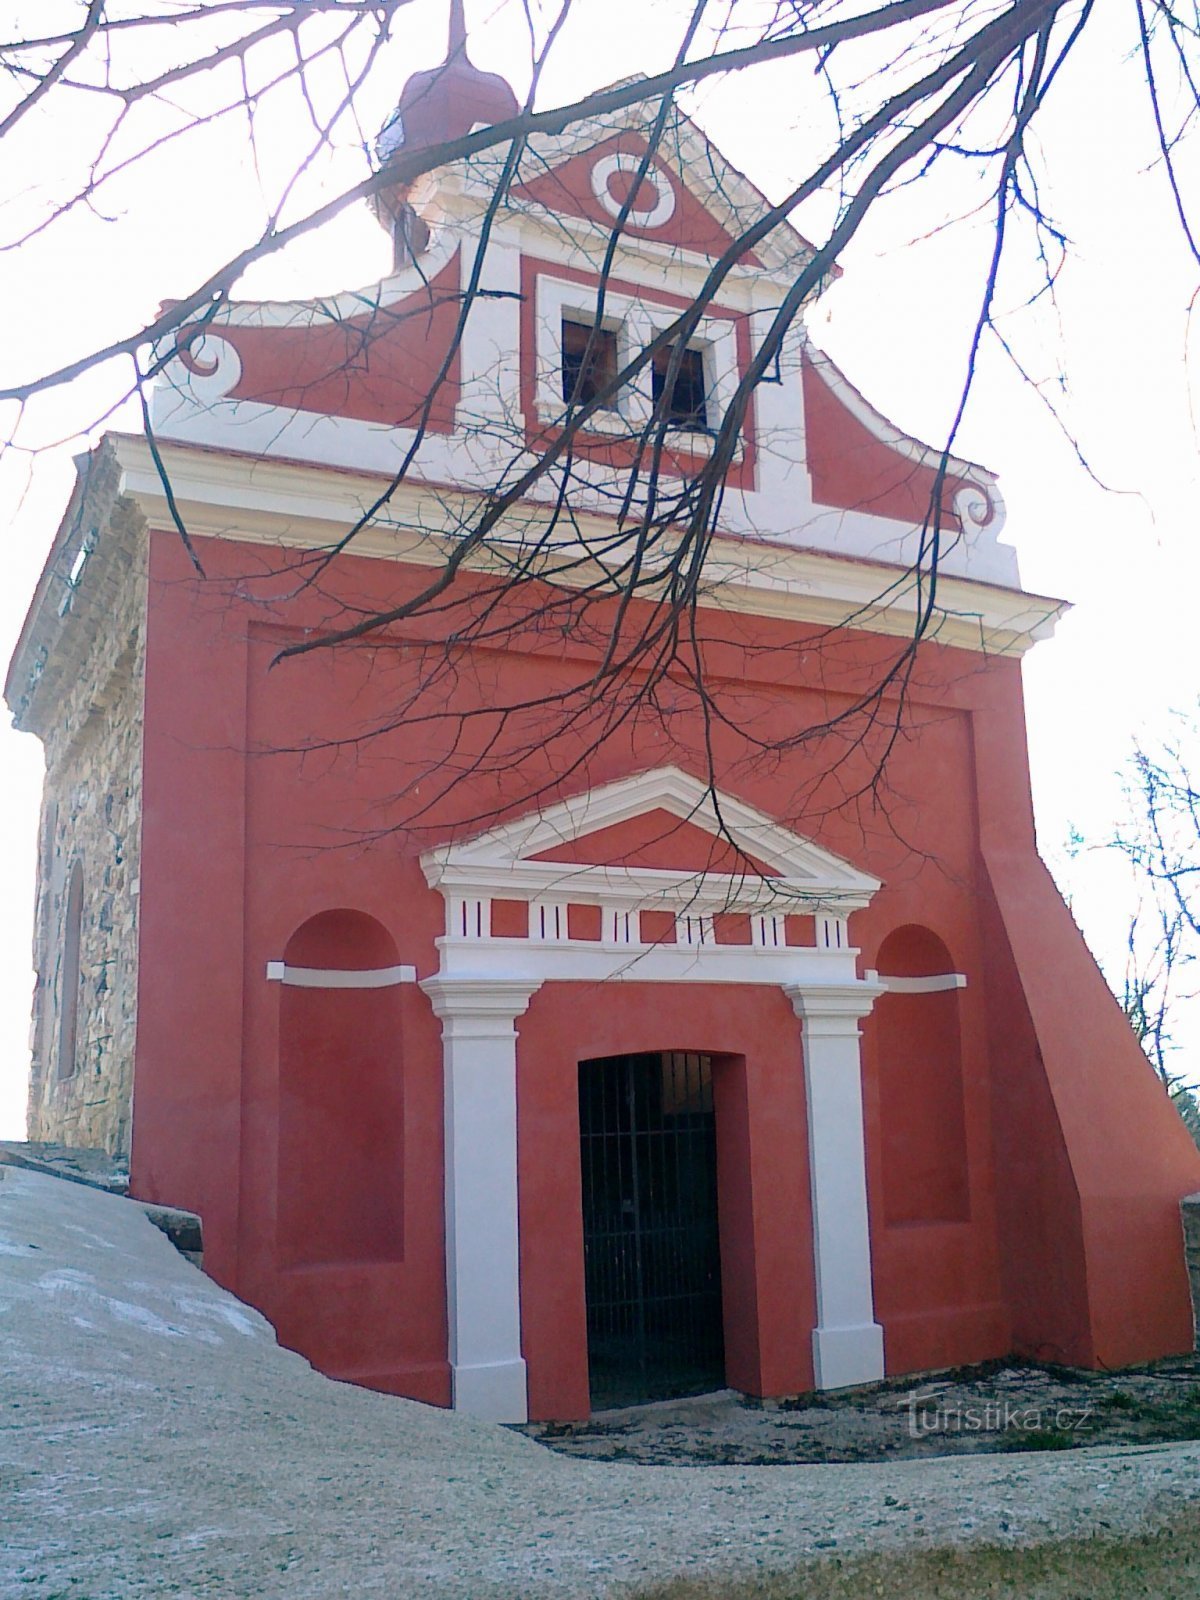 Sinutec の聖ヴィート礼拝堂。